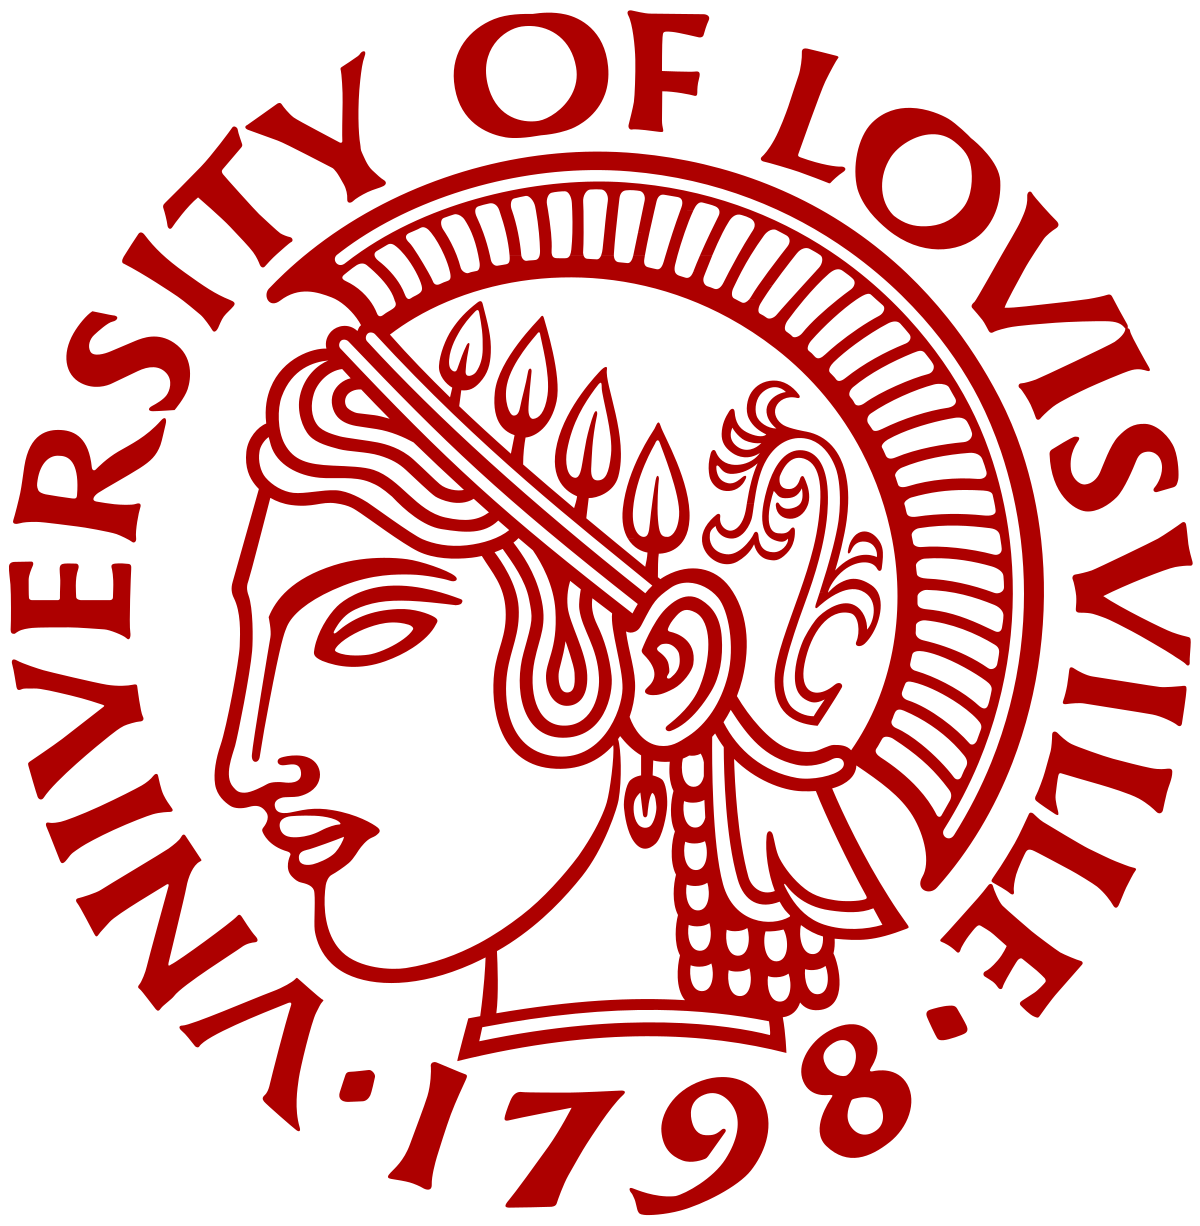 Louisville Cardinals Football Logo - University of Louisville